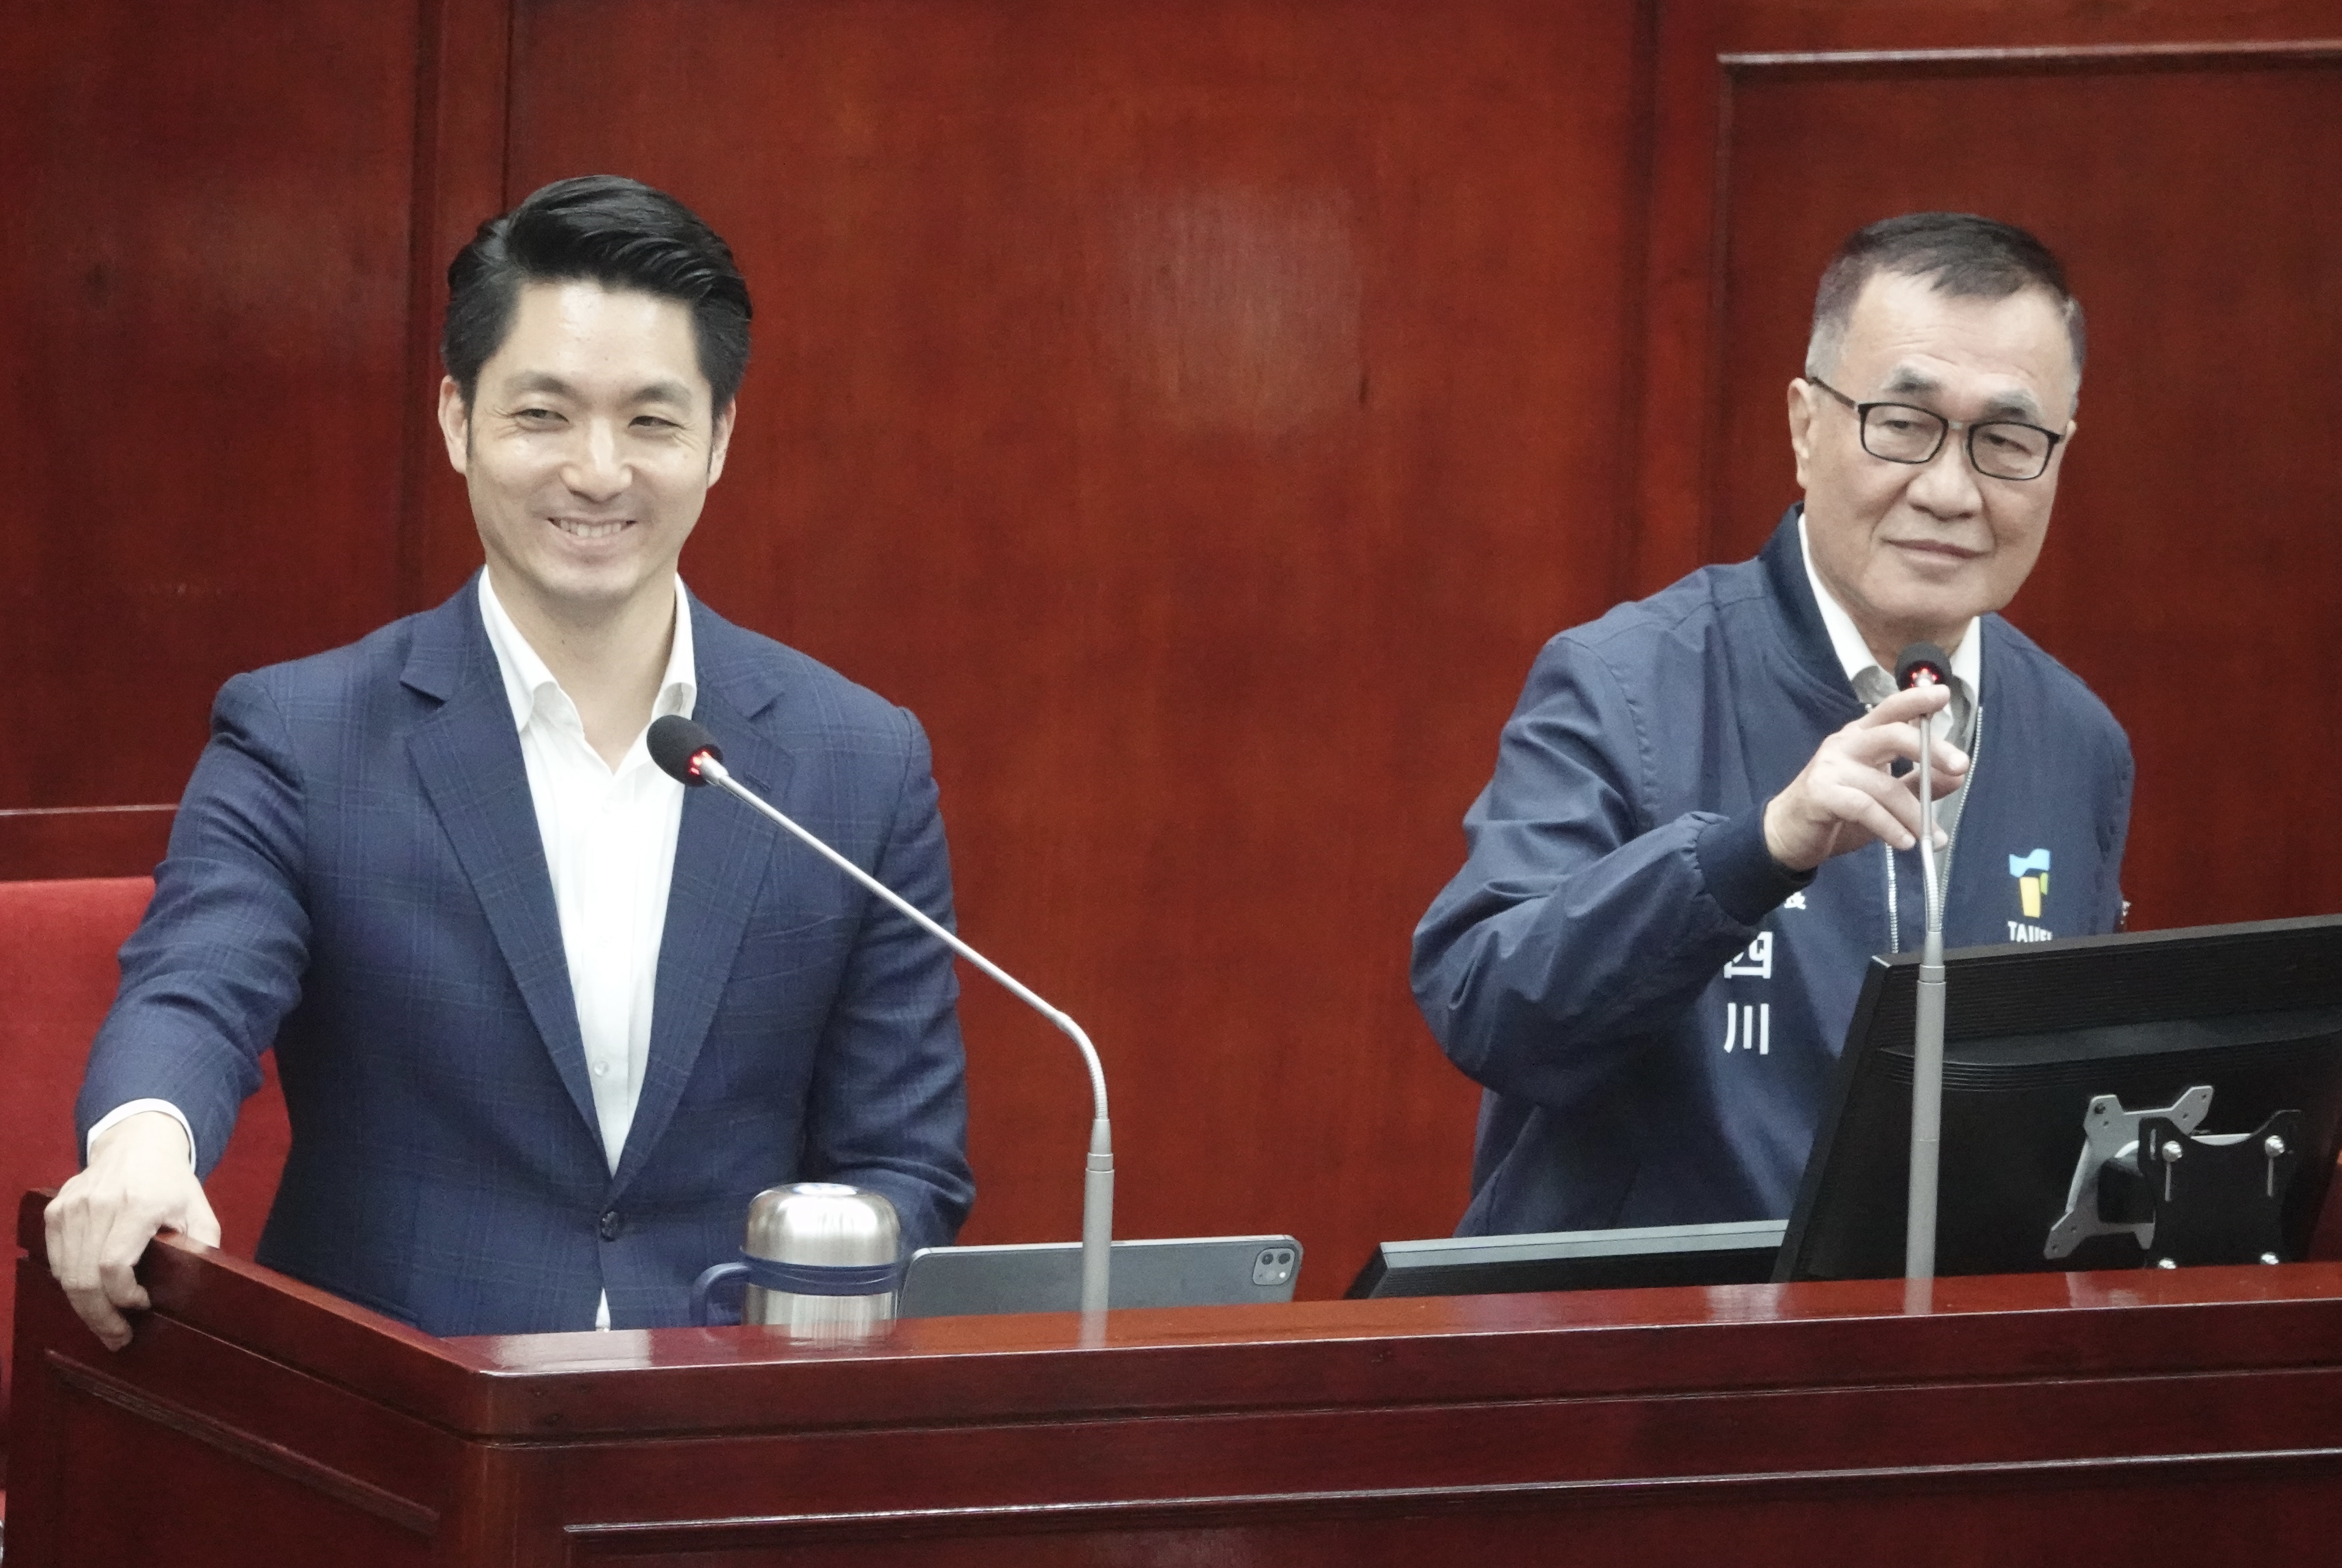 台北市长蒋万安日前与副市长李四川赴议会备询。记者曾吉松／摄影